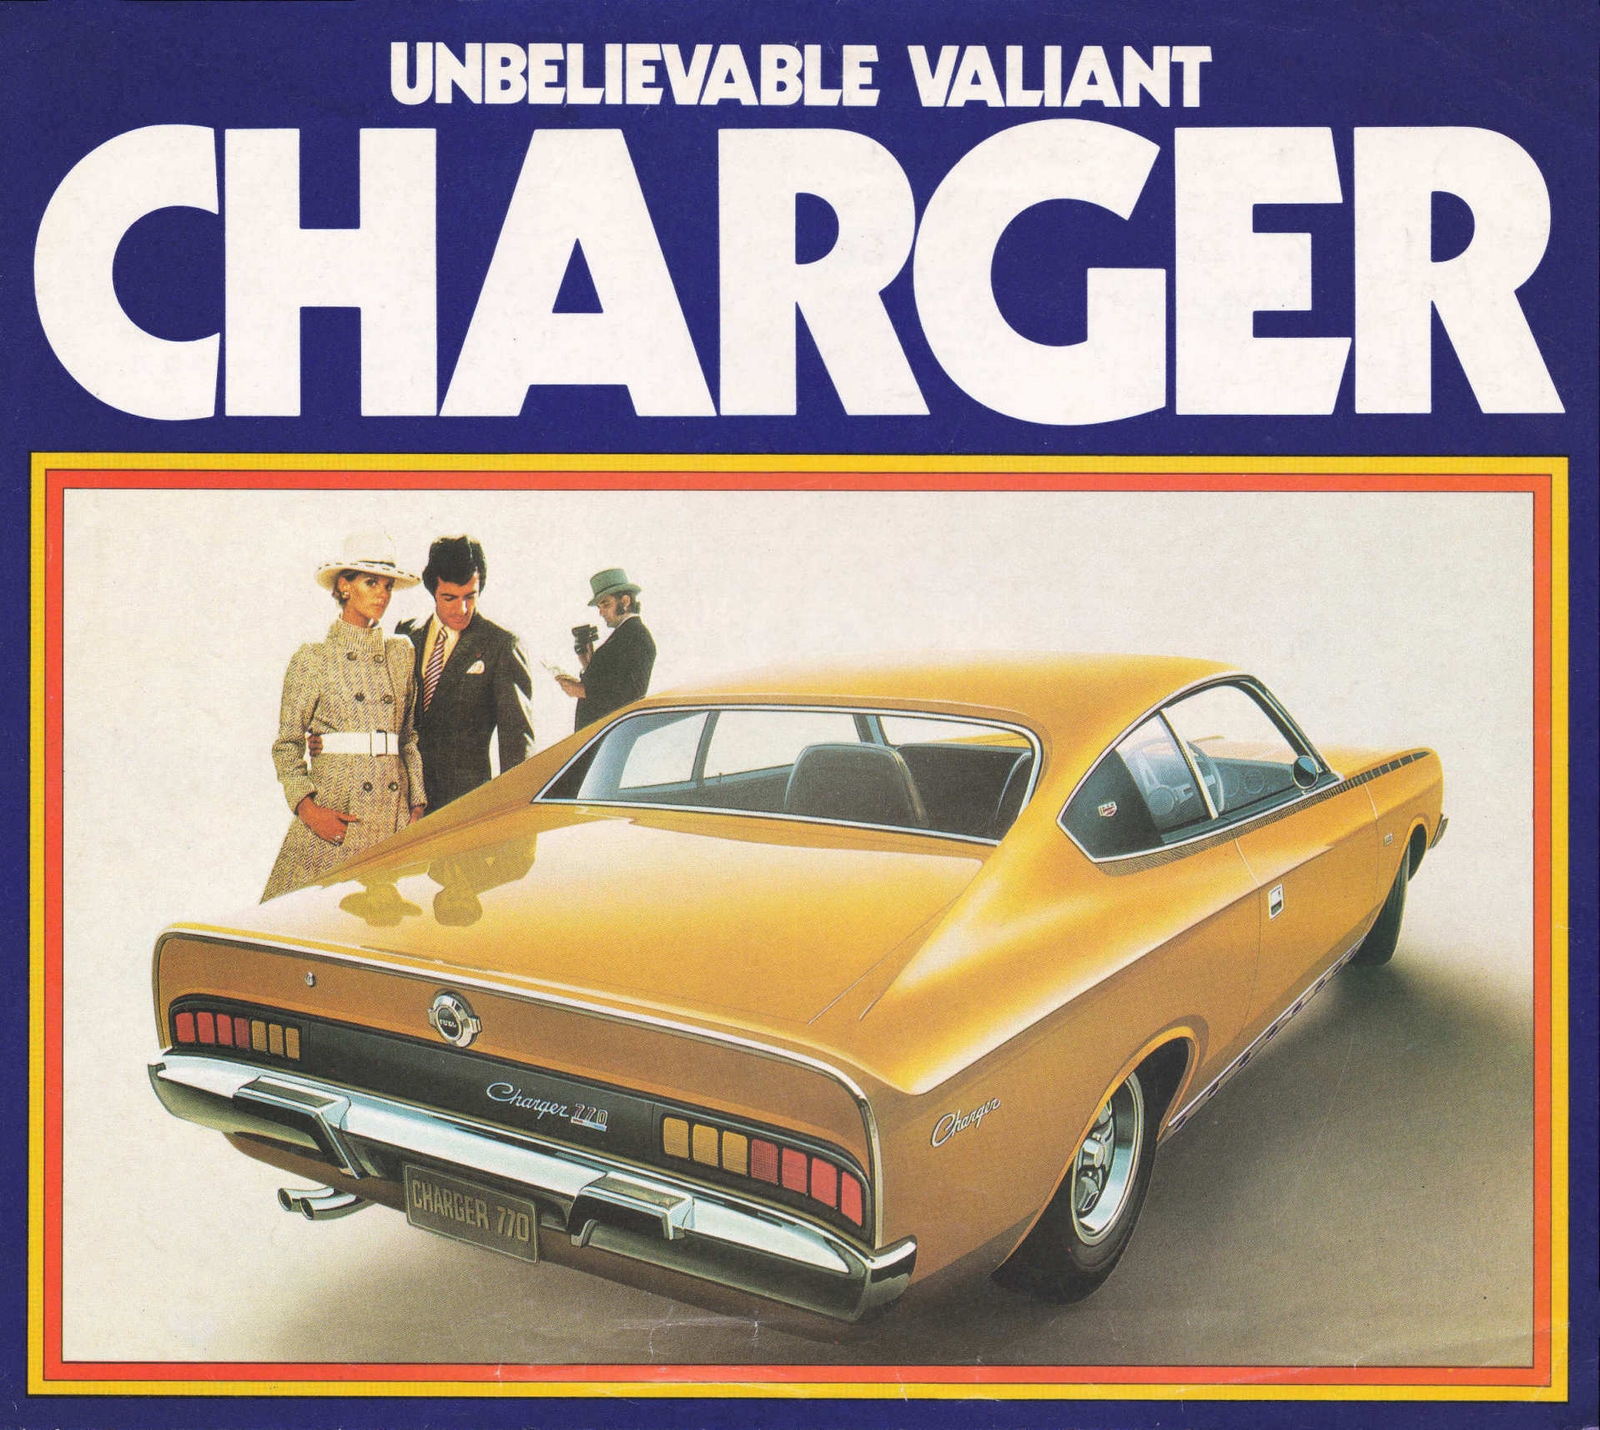 n_1971 Chrysler VH Valiant Charger Poster-01.jpg